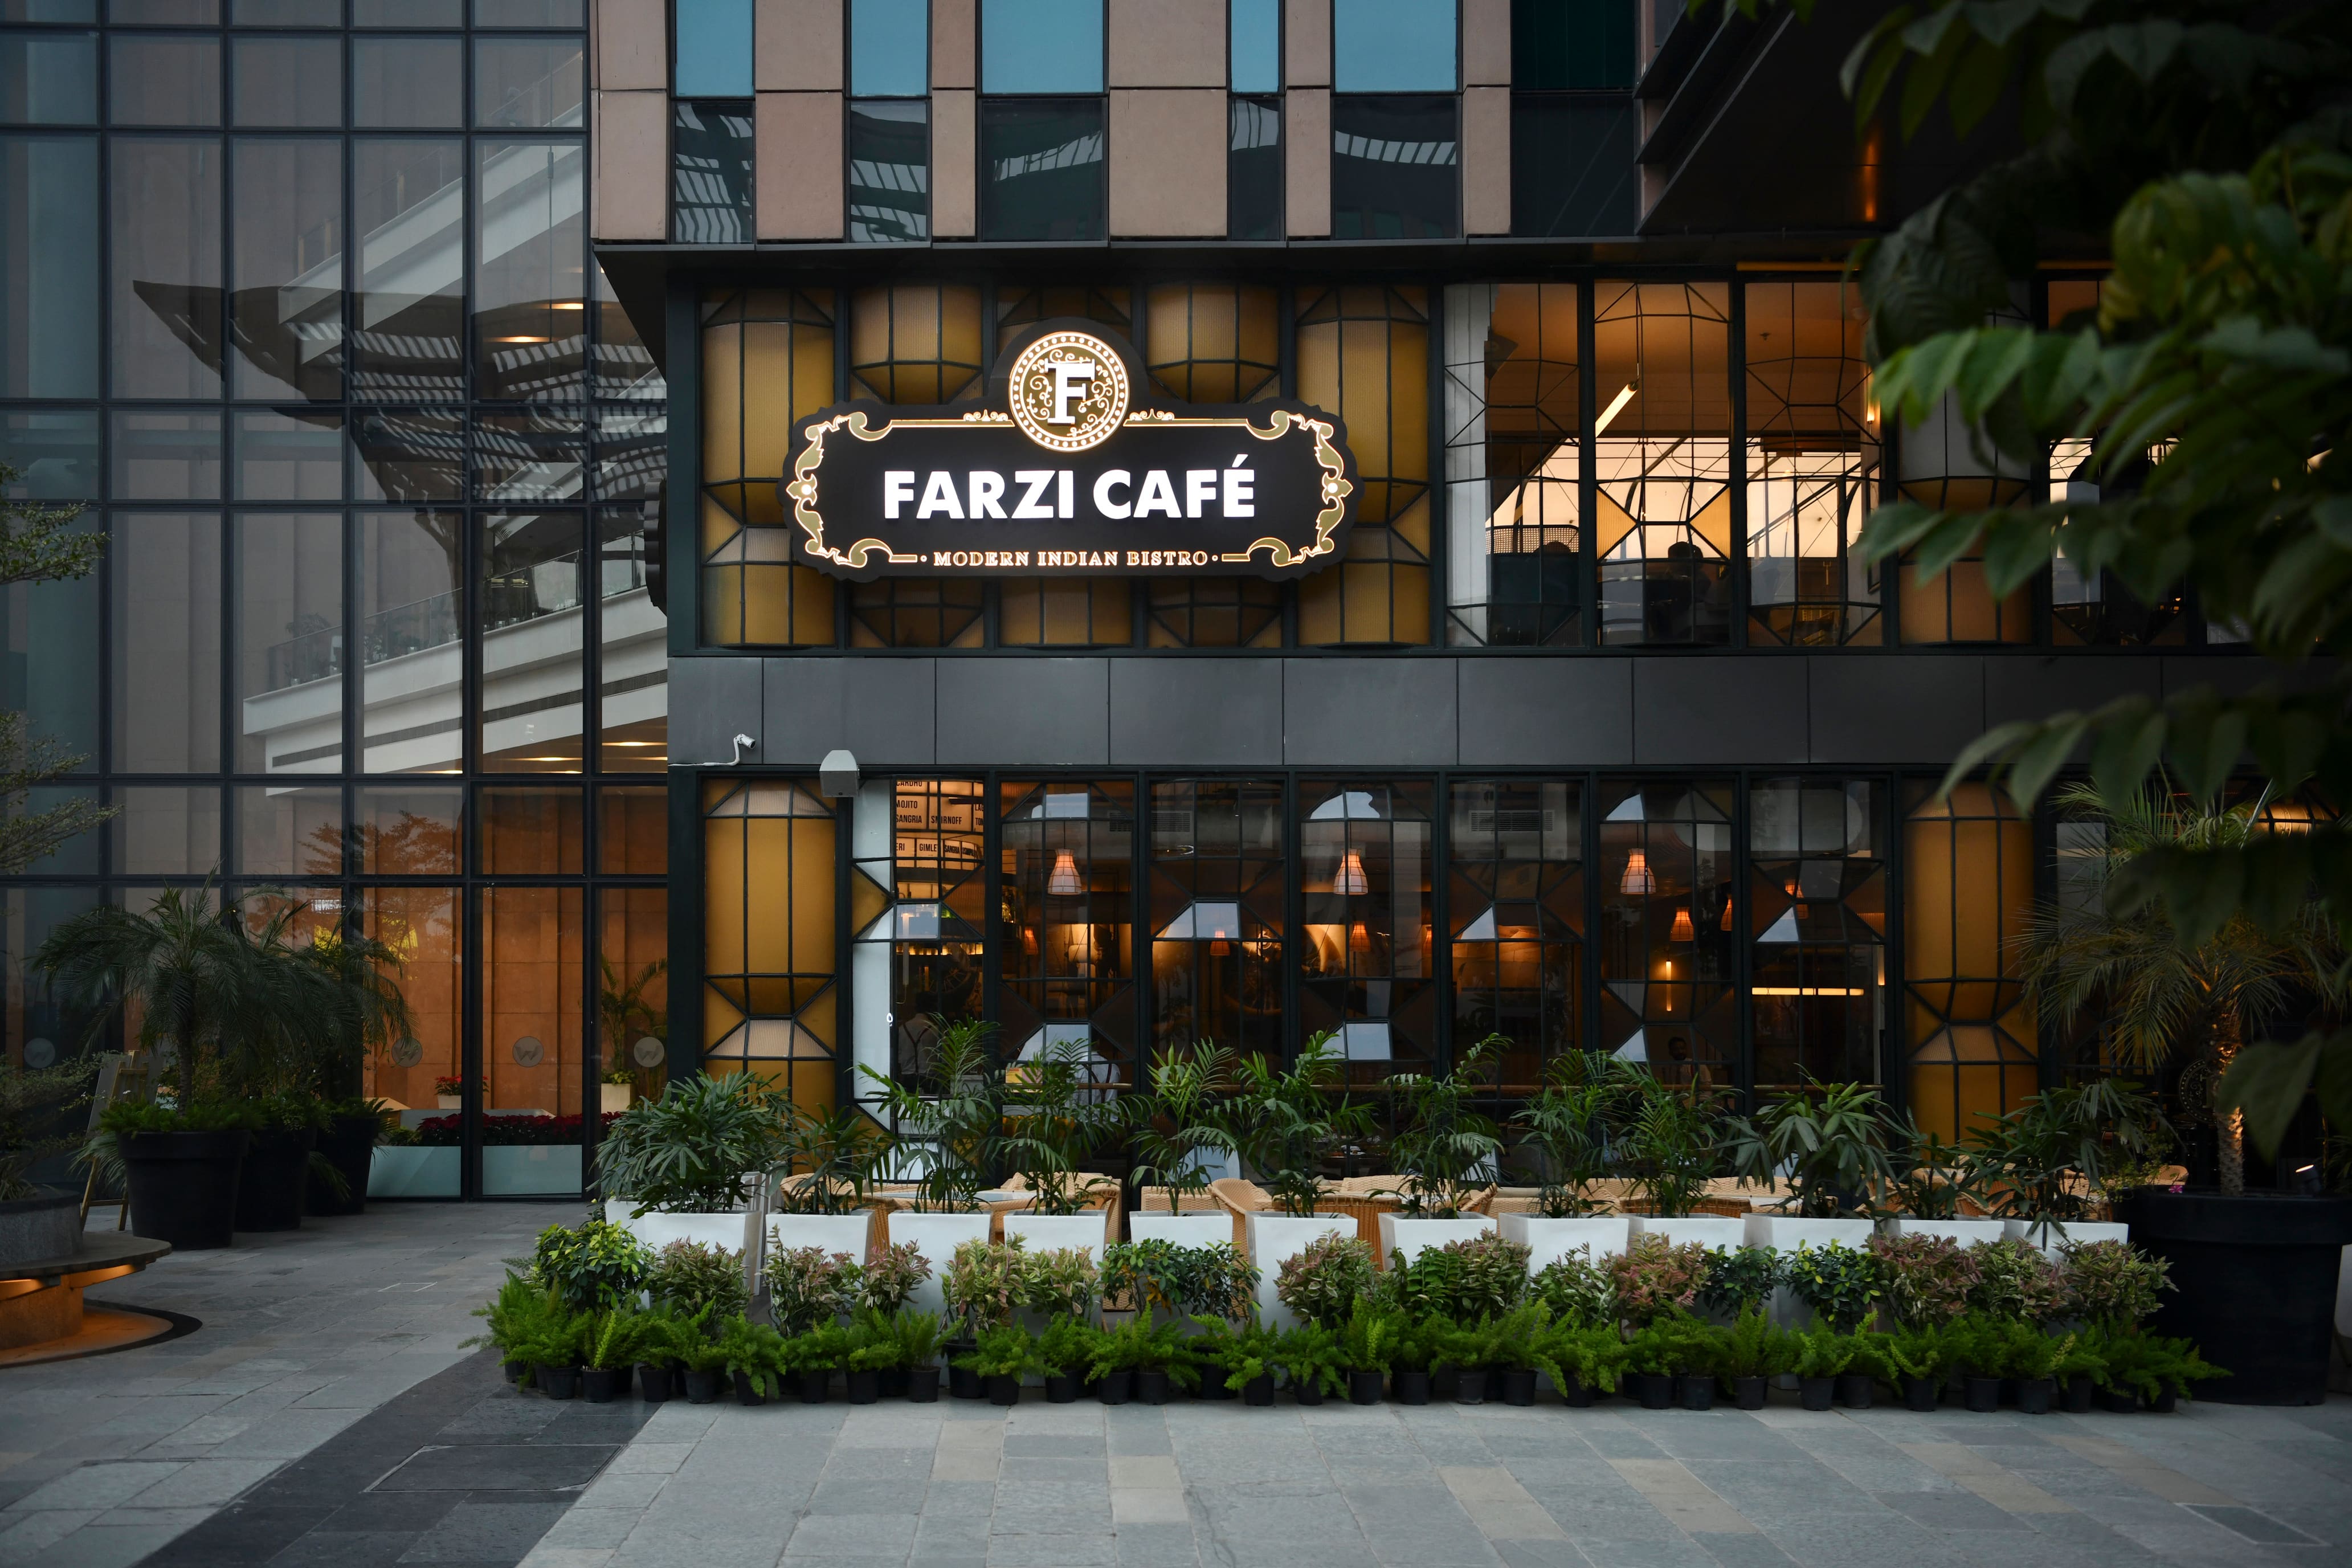 Farzi Cafe Franchise